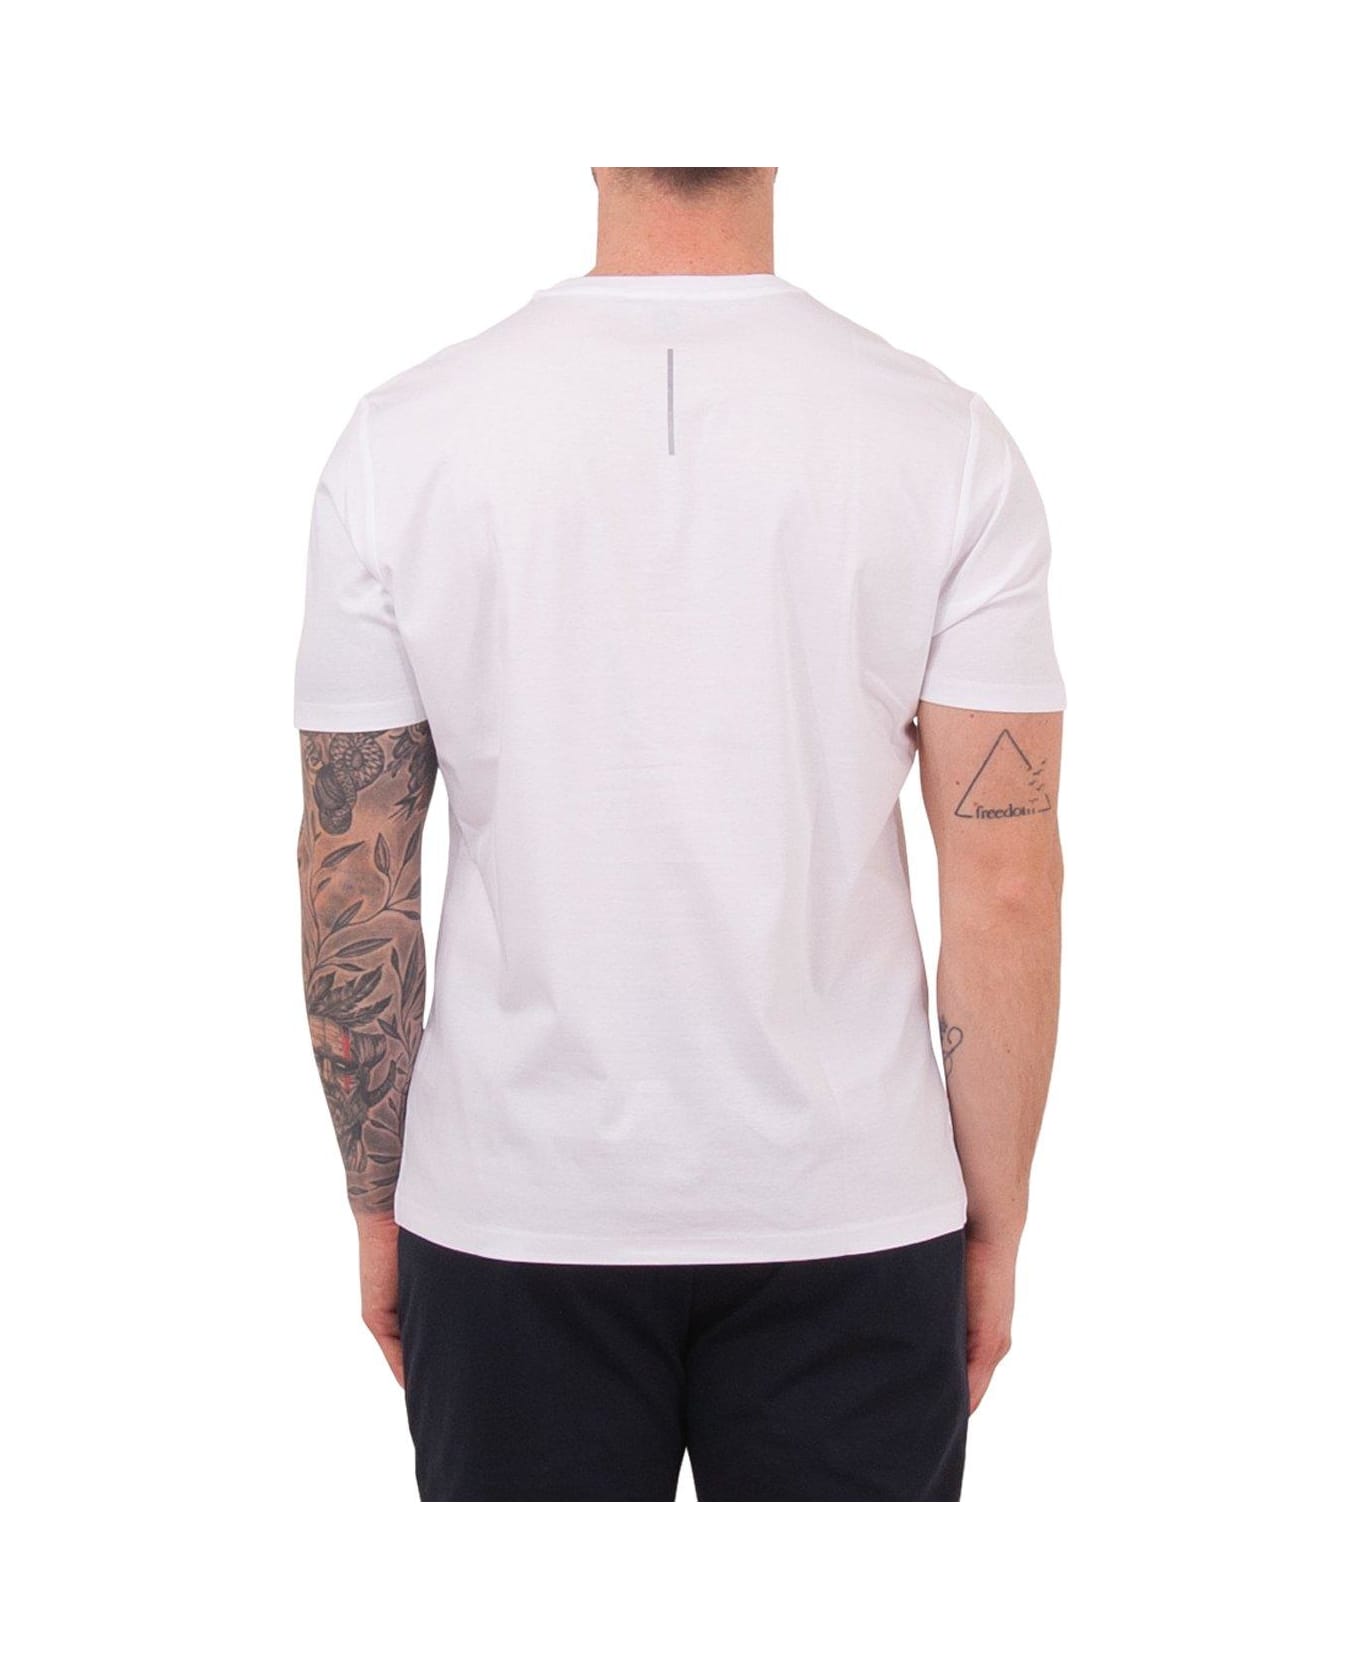 People Of Shibuya Short-sleeved Crewneck T-shirt - White シャツ